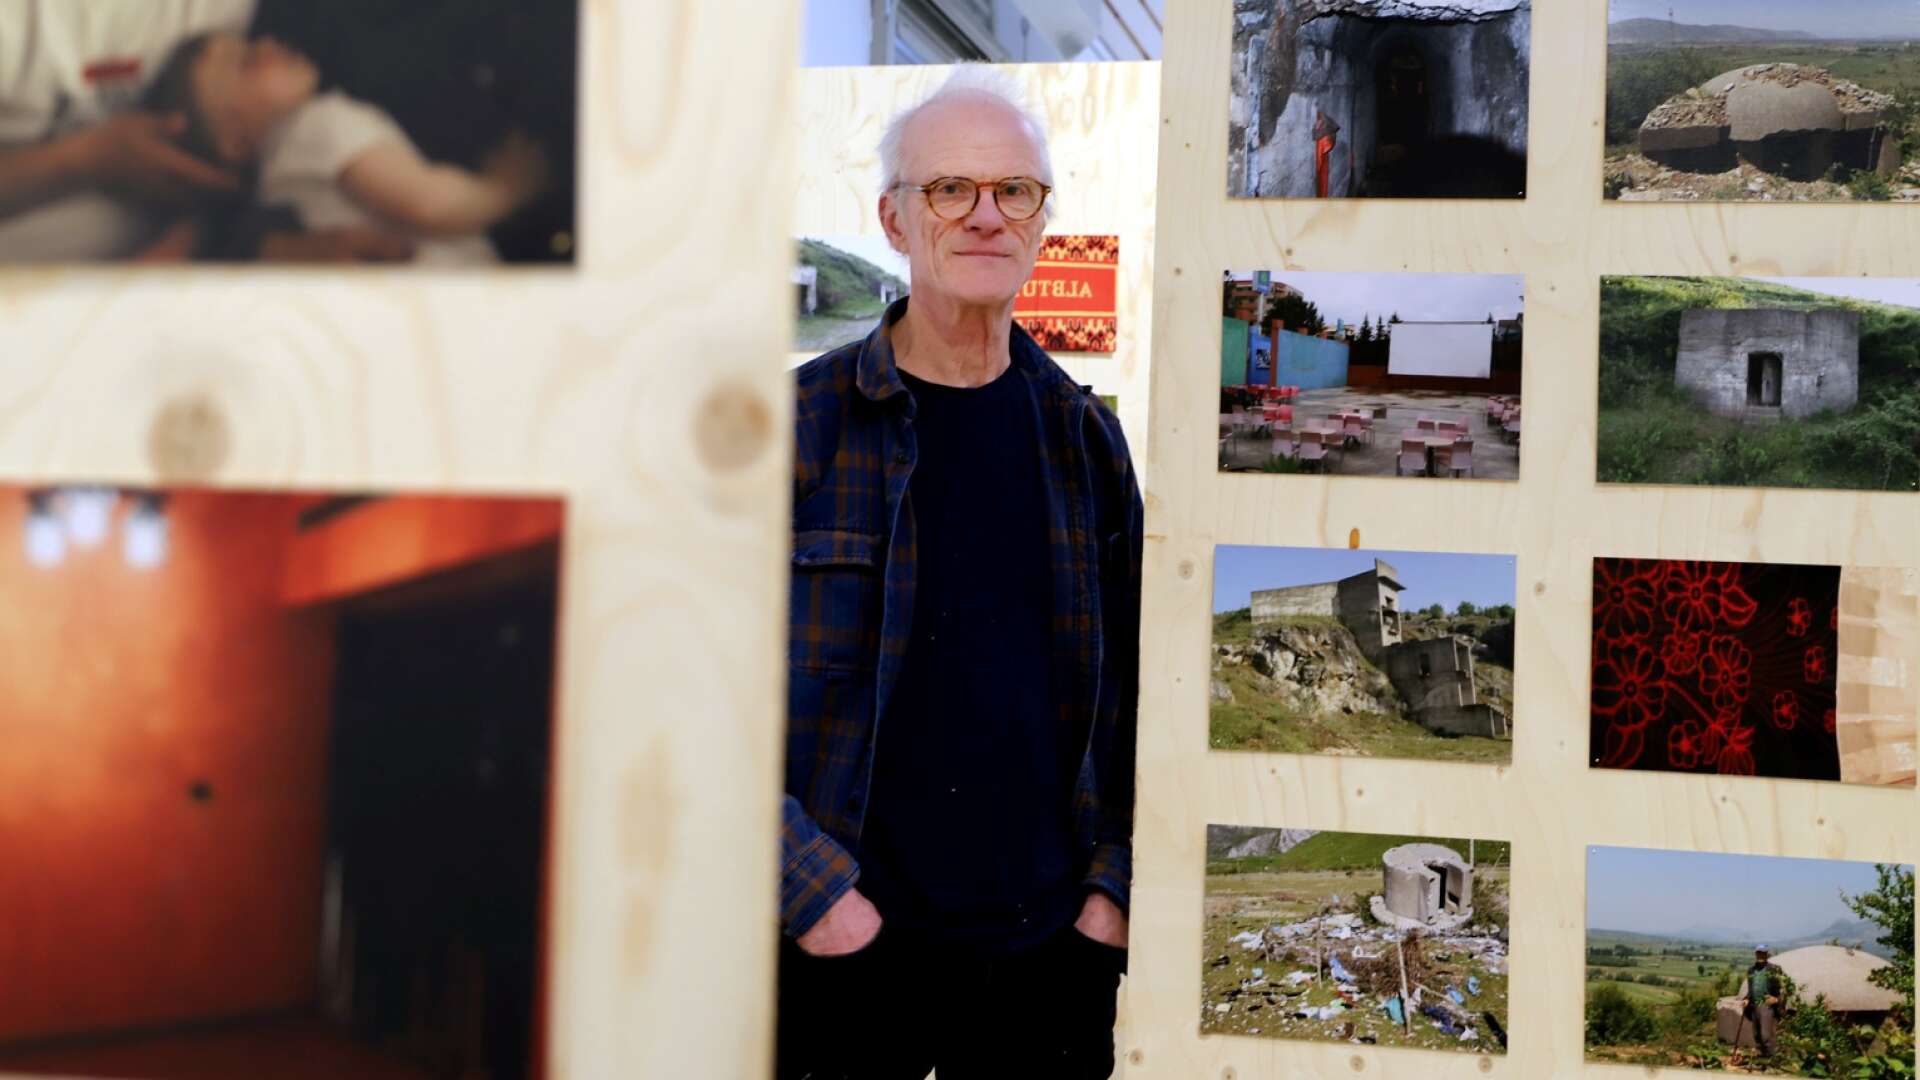 Staffan Jofjell visar fotografier och filmer från tre av sina internationella projekt i utställningen Checkpoint på Rackstadmuseet. Det blir en markering av oroshärdar, men också mänsklig styrka.